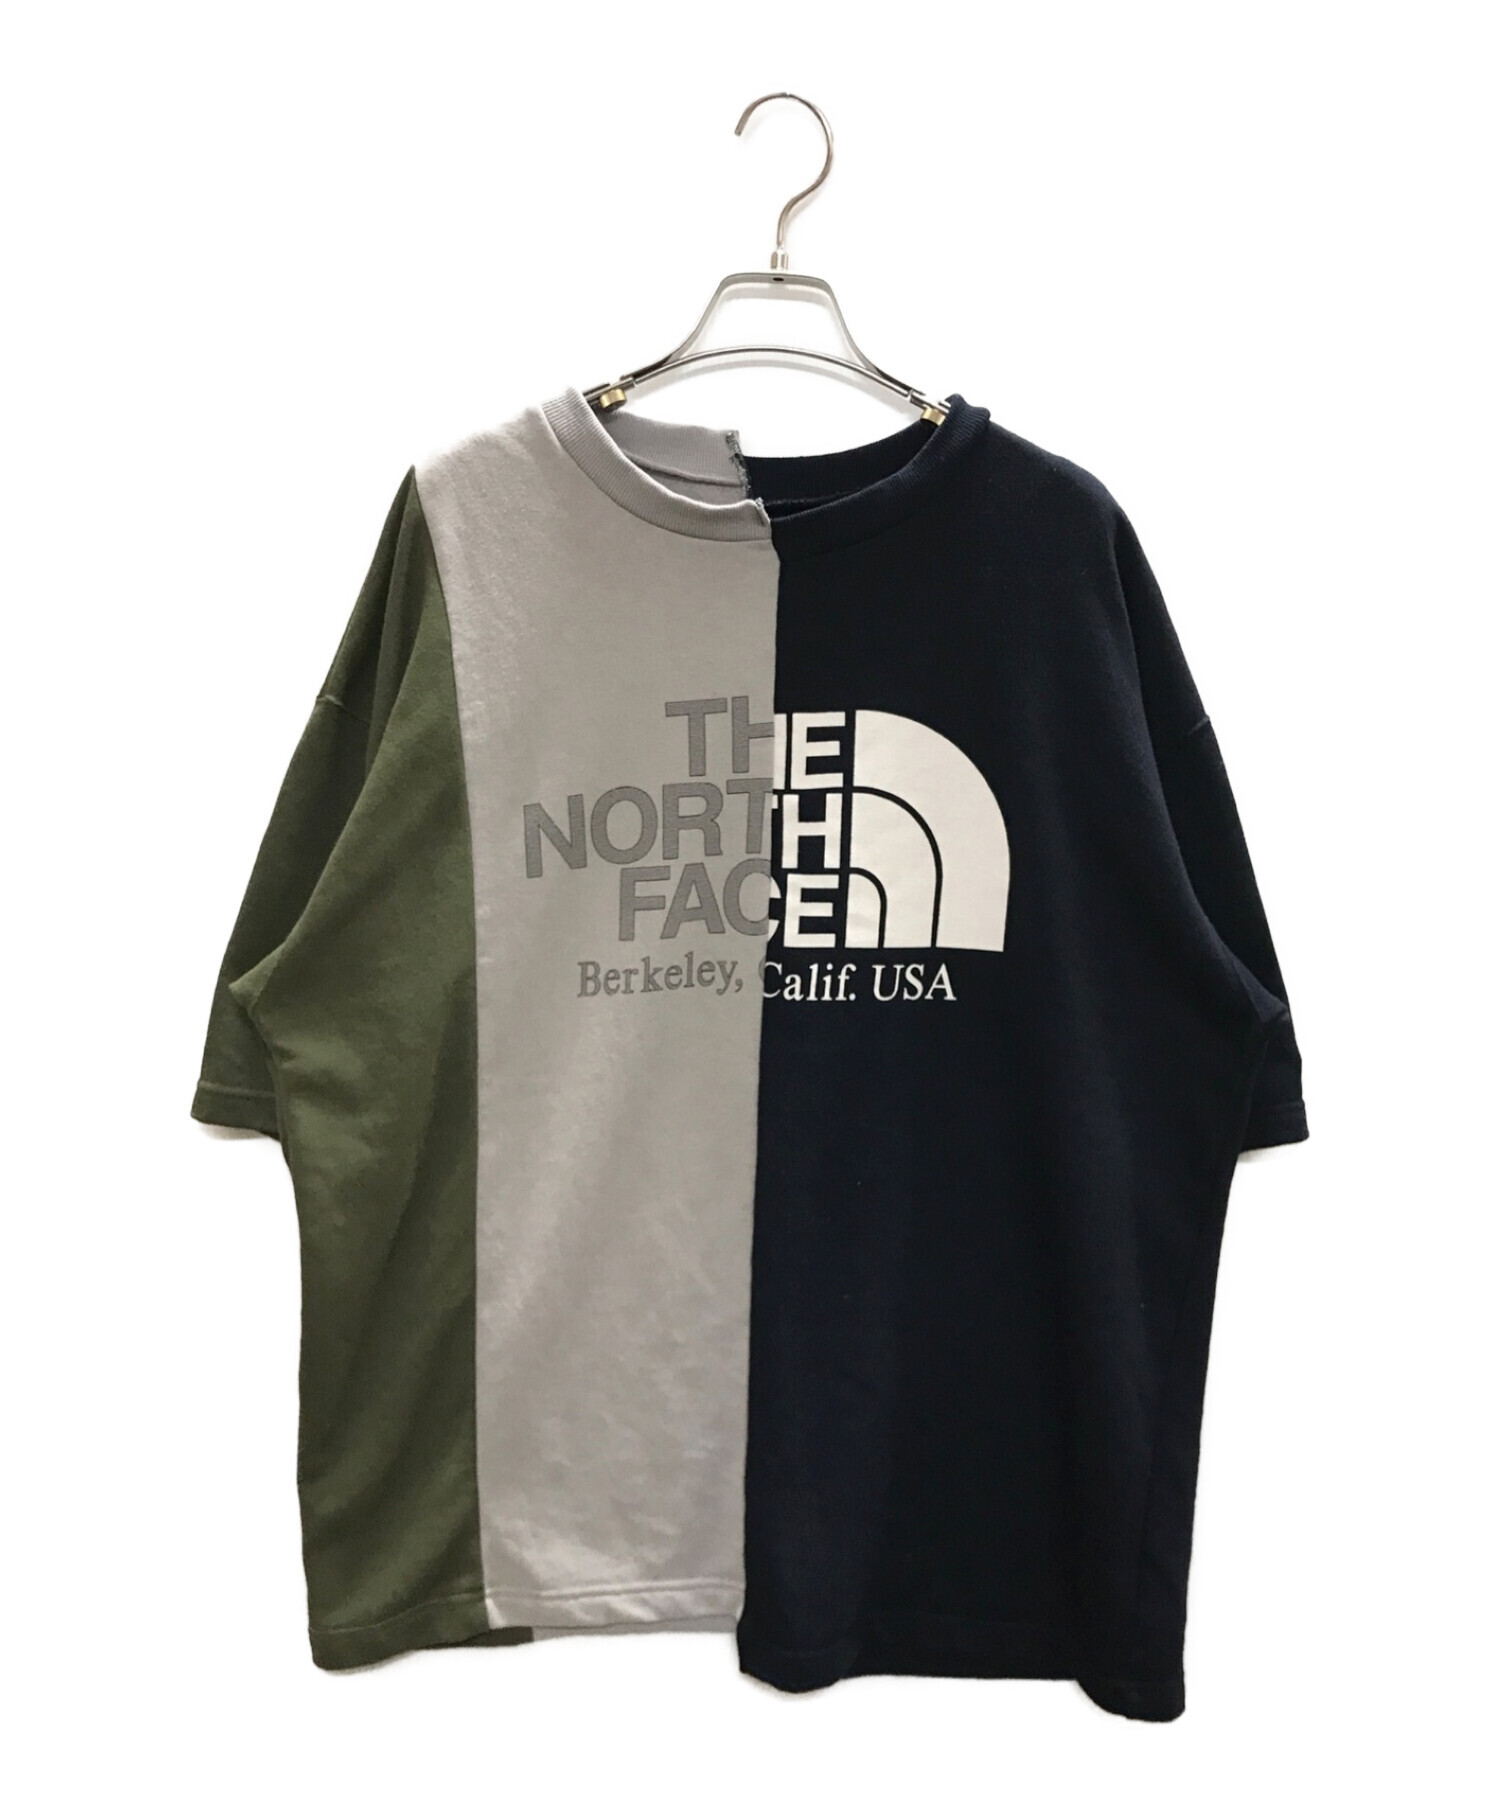 THE NORTHFACE PURPLELABEL (ザ・ノースフェイス パープルレーベル) アシンメトリーTシャツ ネイビー×グレー×カーキ  サイズ:L